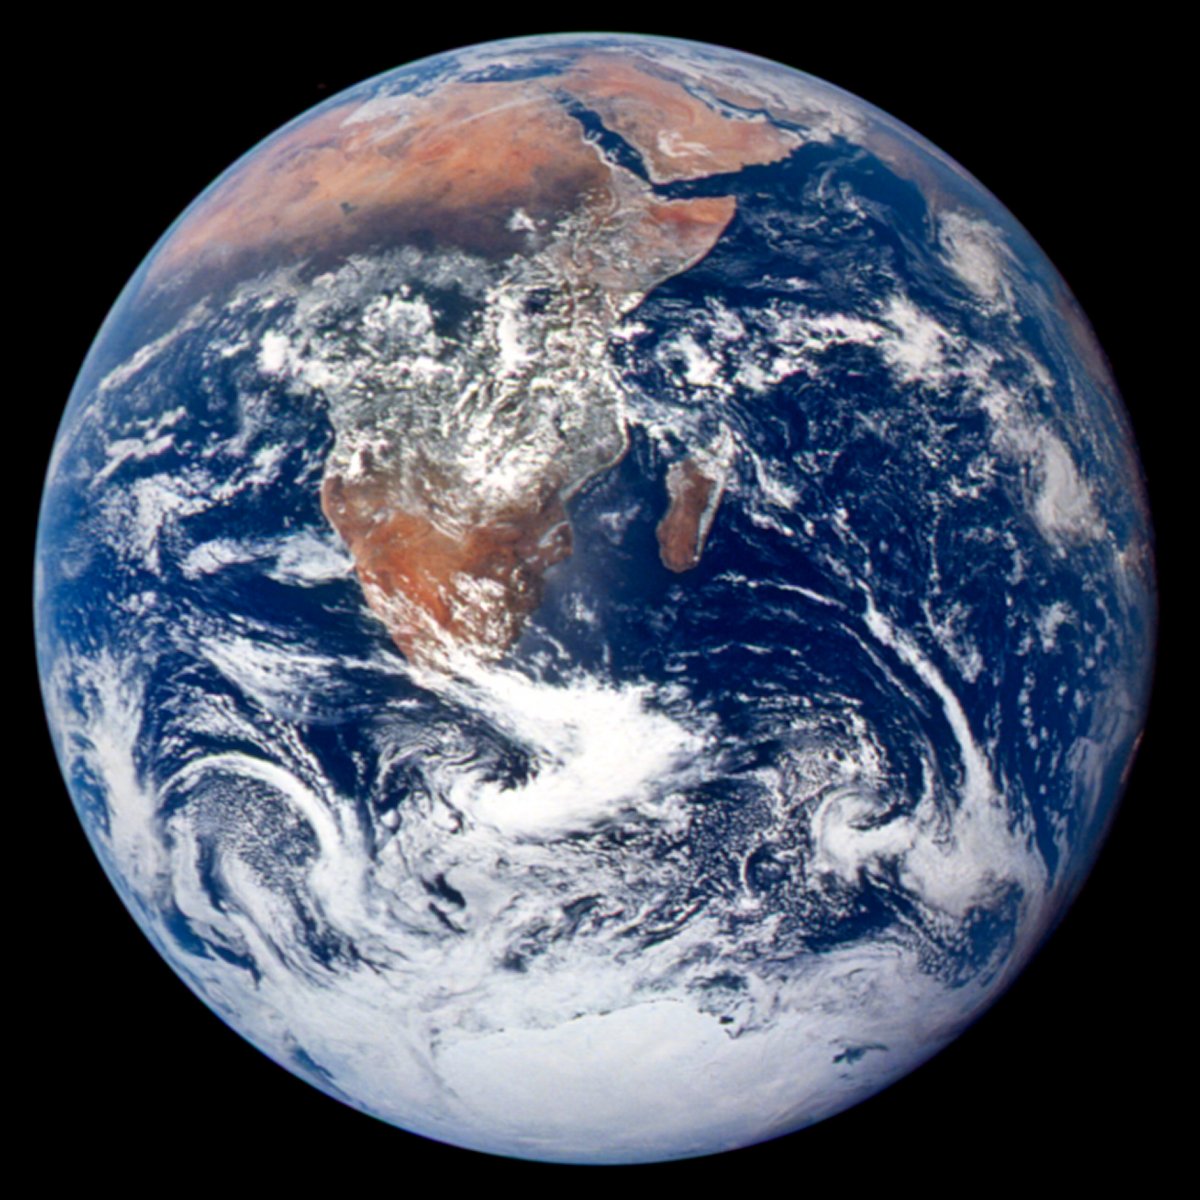 NASA's original 1972 Blue Marble photograph. Credit: NASA